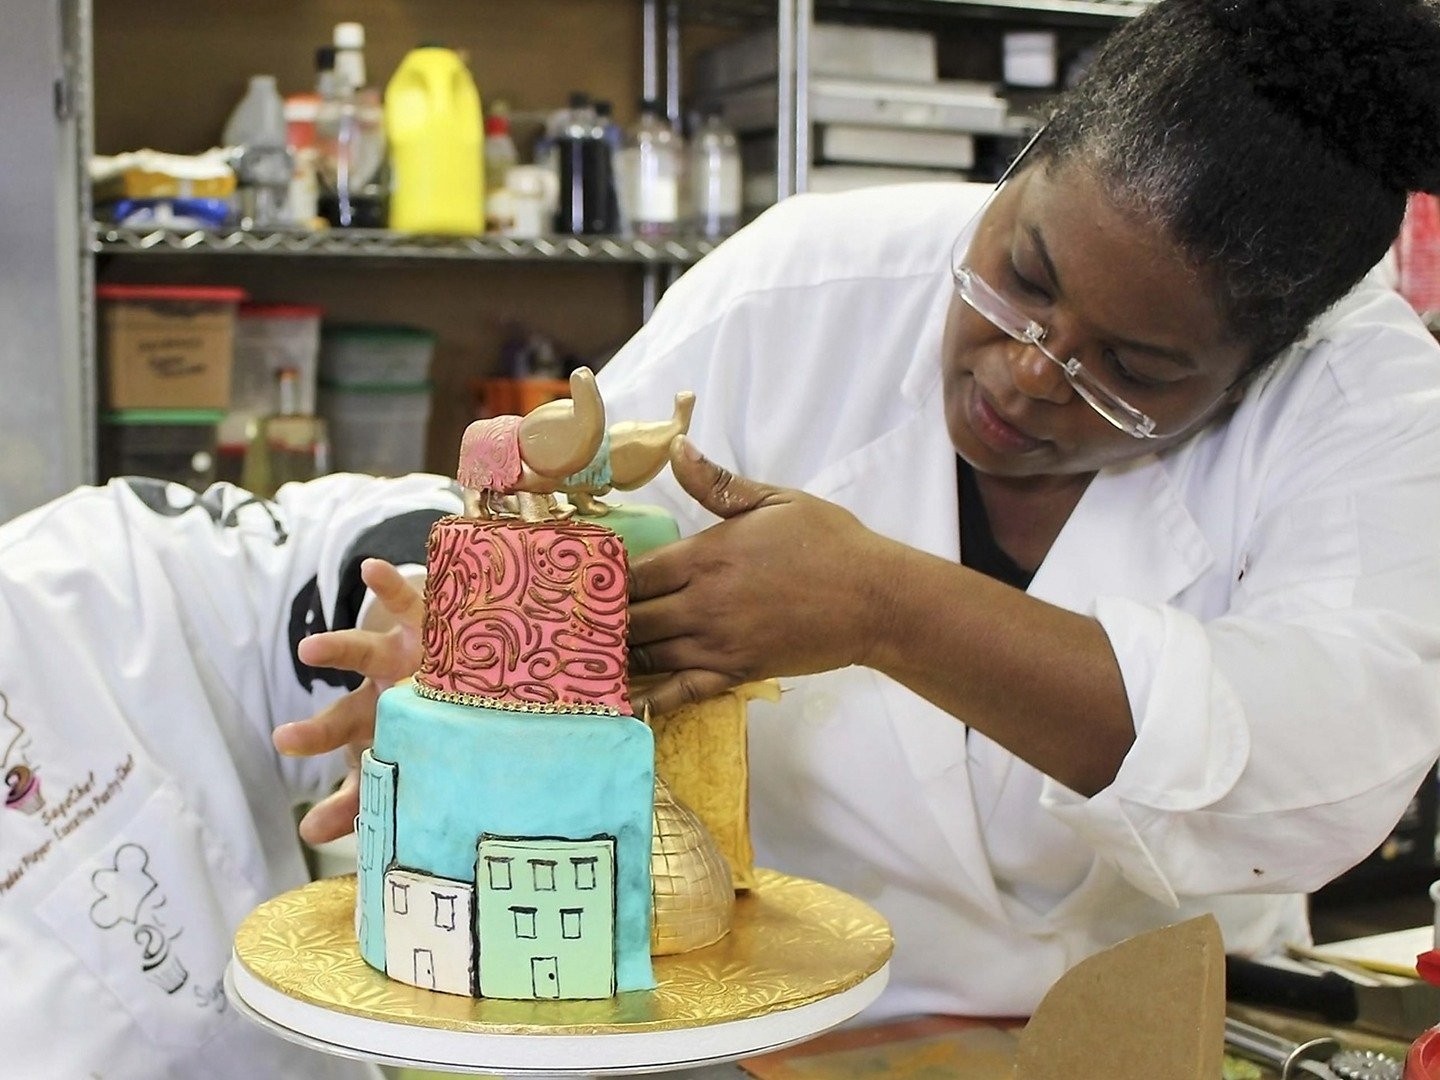 Taj Mahal cake making || Taj Mahal cake design || Homemade Cake ||  Miniature cake - YouTube